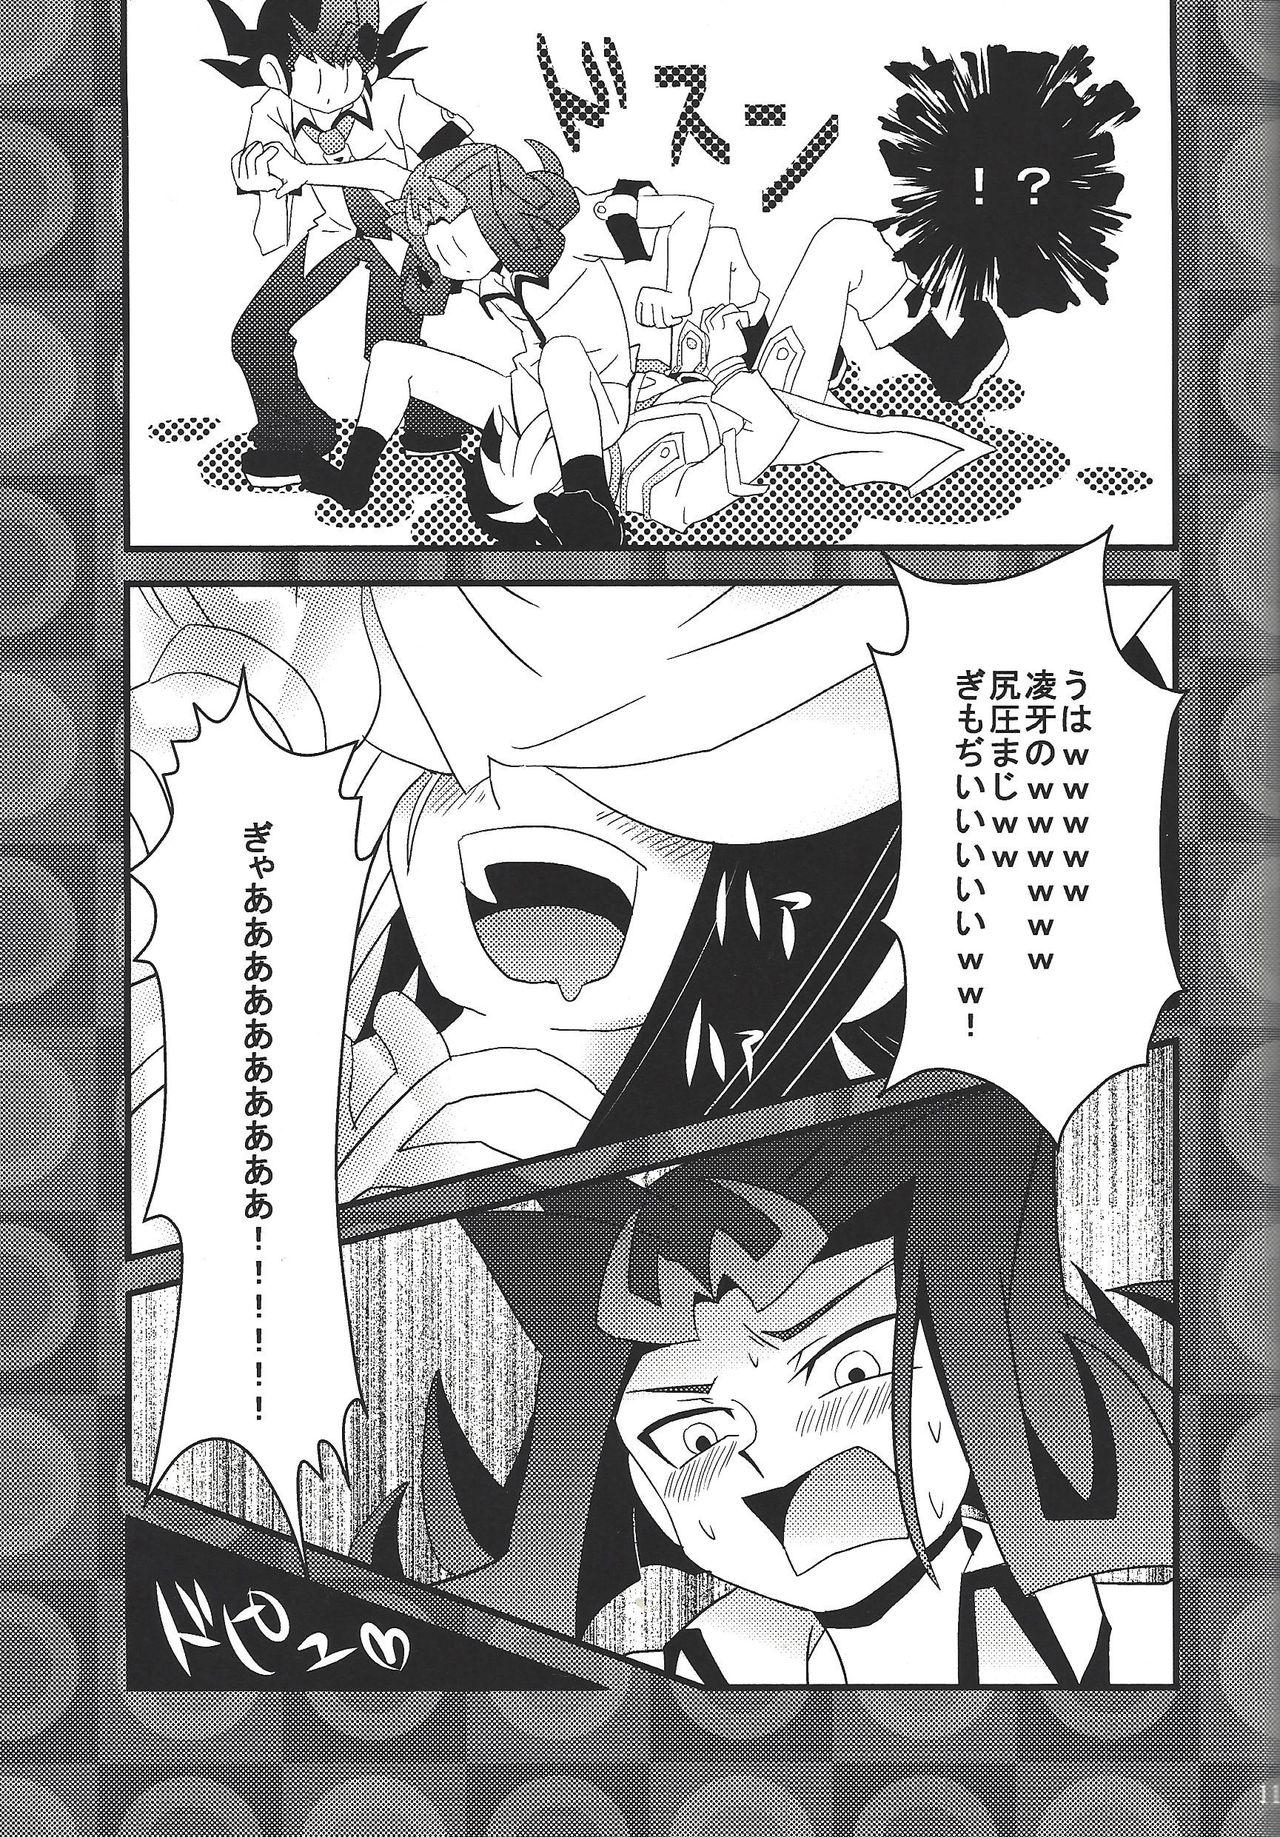 Dick Sucking Riajū shi teru ryōga o ne totte ganmen kijō shite moraitai IV no hon - Yu-gi-oh zexal Hardfuck - Page 10